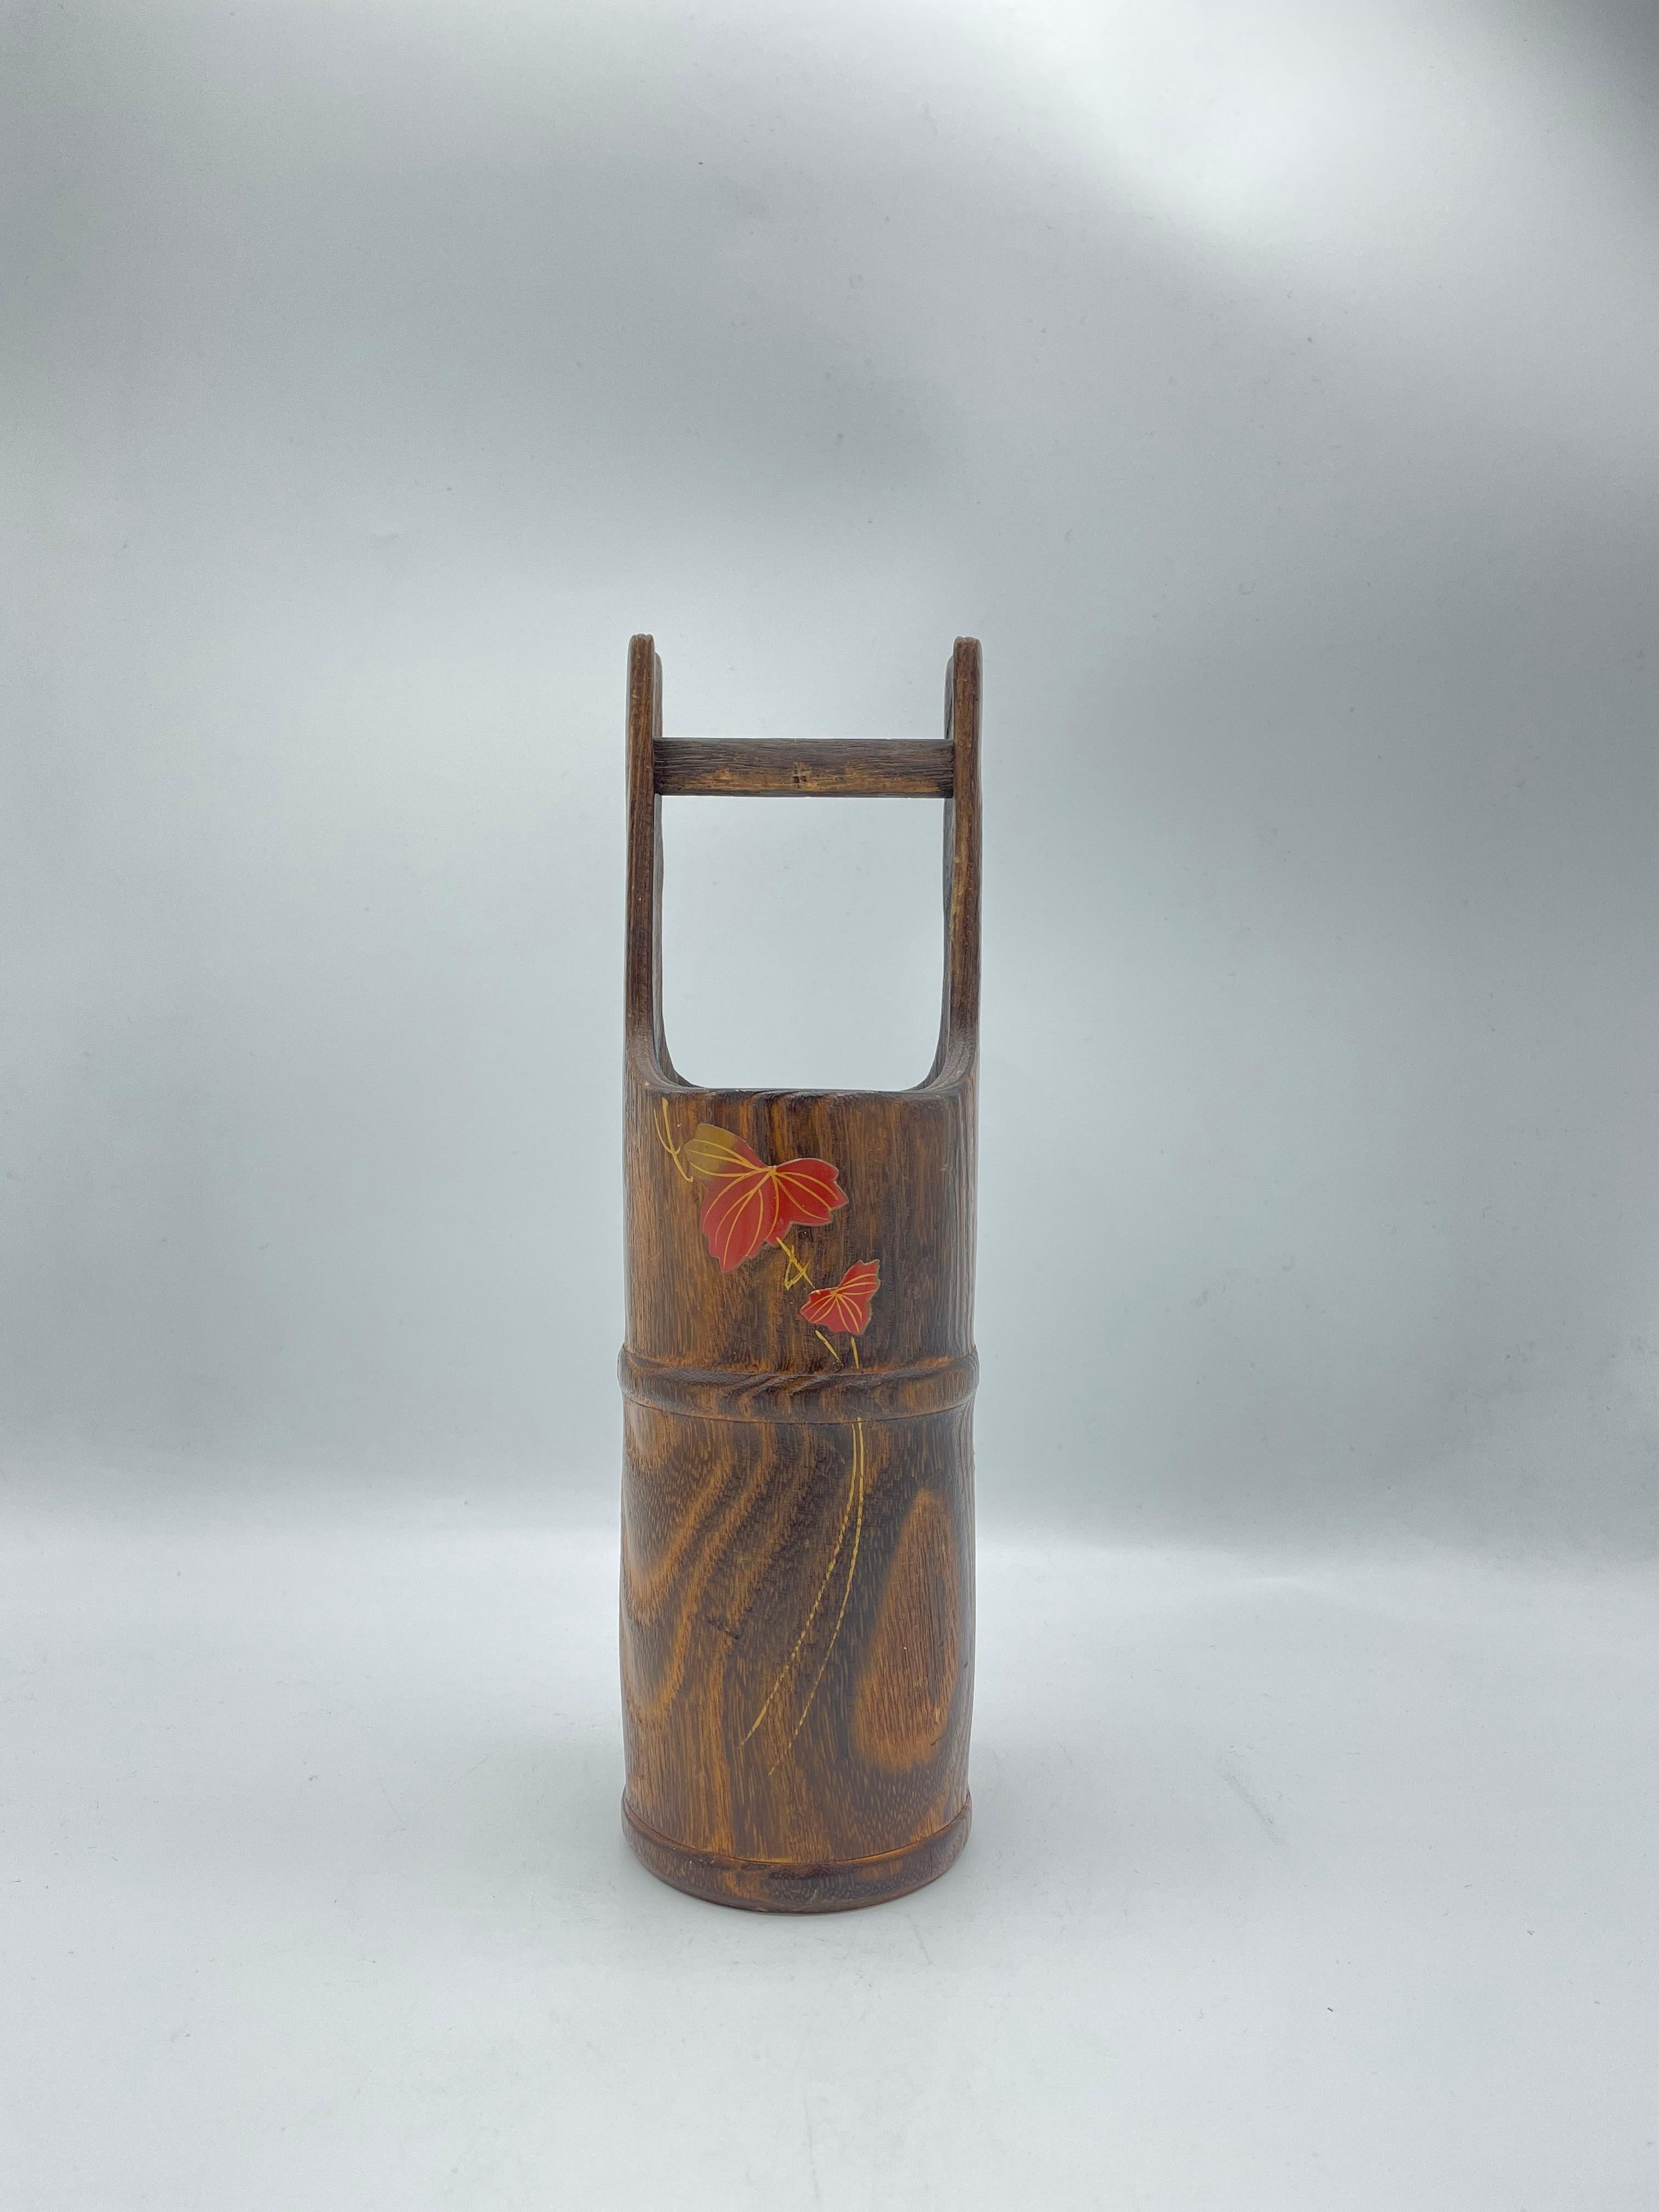 Il s'agit d'un vase à fleurs fabriqué au Japon dans les années 1970, à l'ère Showa.
Il est fait de bois et à l'intérieur, il y a un métal pour mettre de l'eau.
Il peut être utilisé comme vase à fleurs et comme décoration.
Il y a un motif de feuille